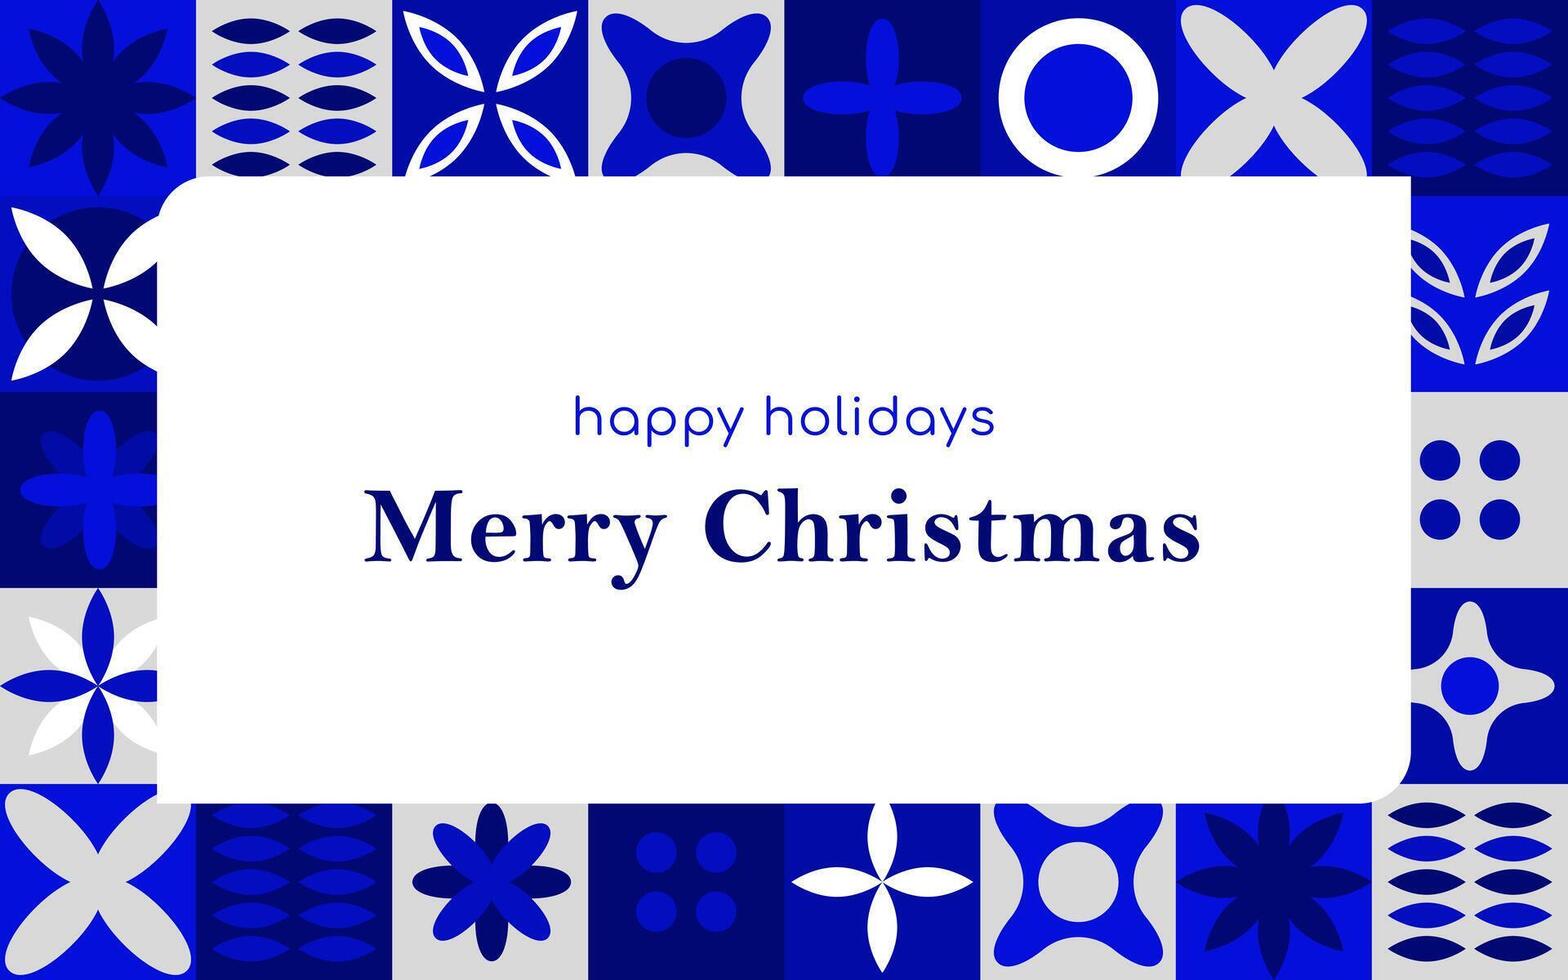 texto alegre Navidad y contento Días festivos con un geométrico modelo. azul loseta modelo. imagen en tarjeta postal vector